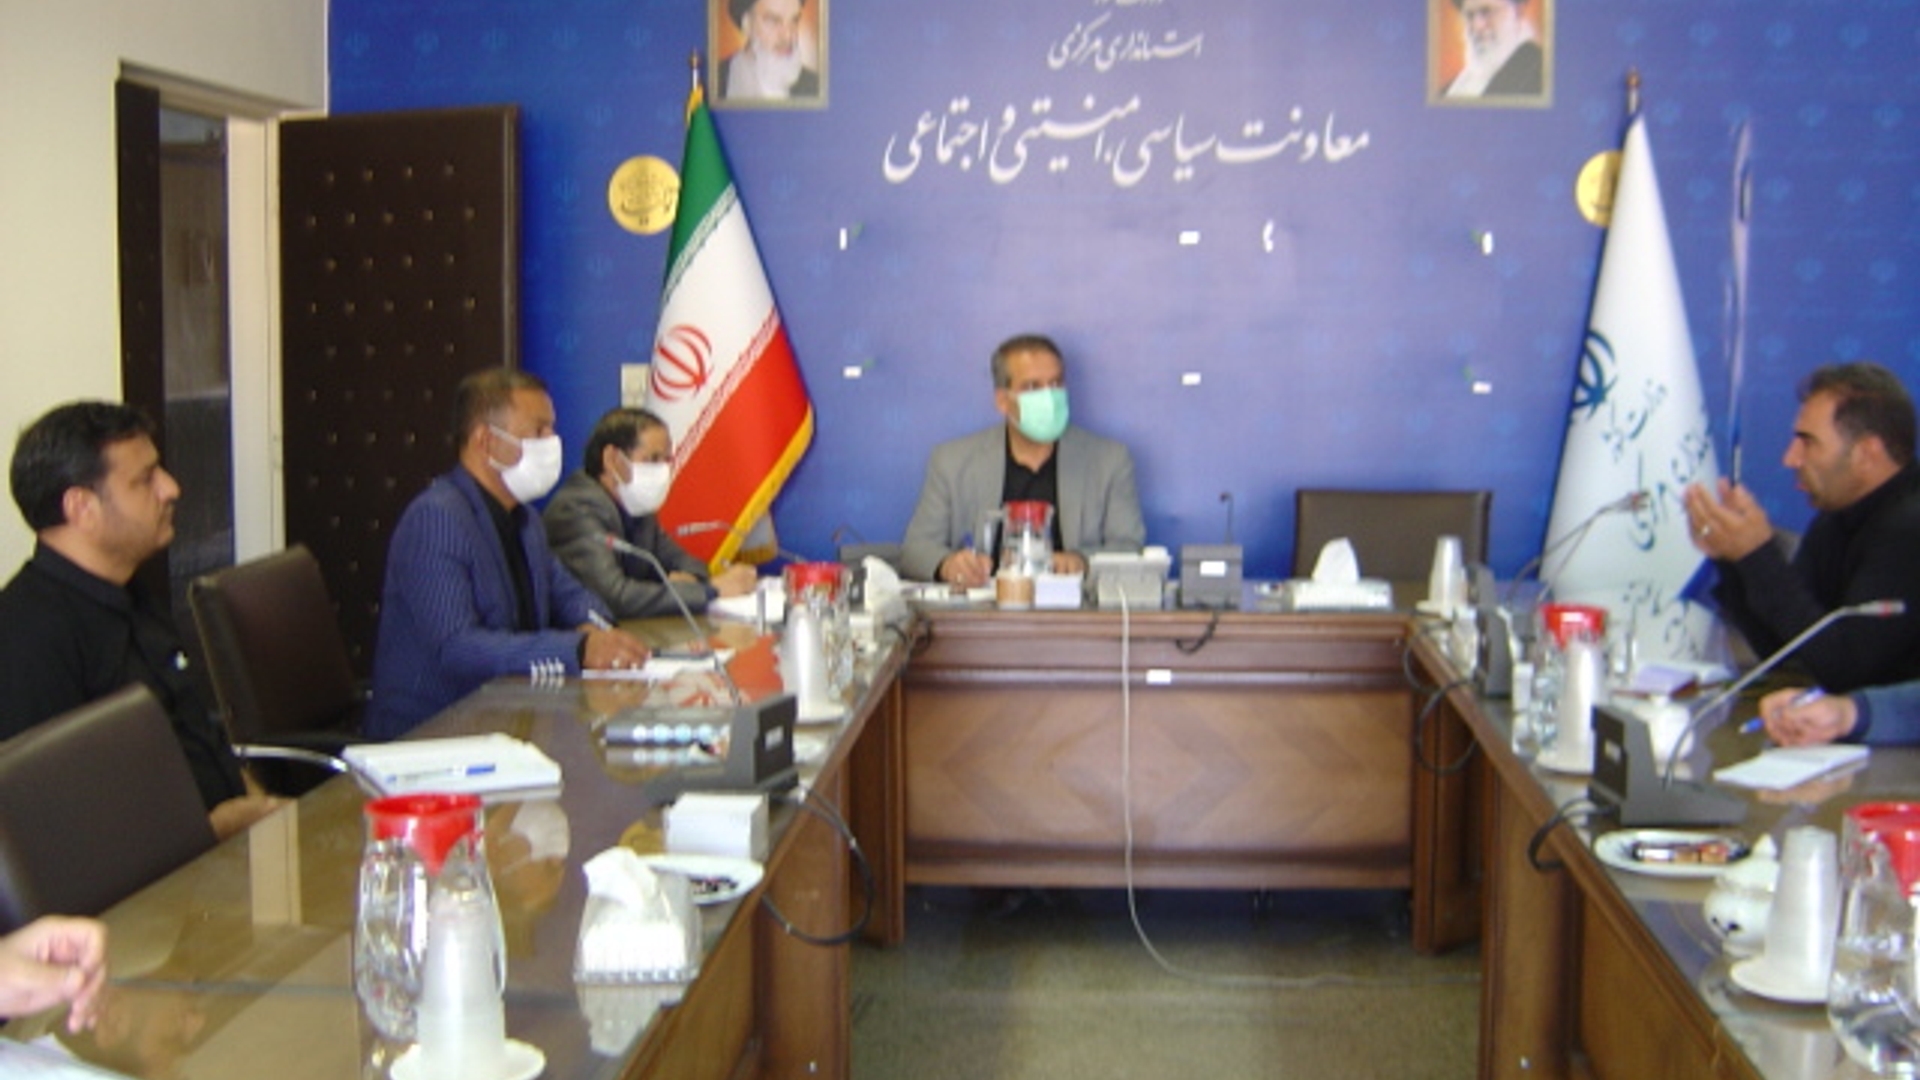 جلسه کمیسیون پیشگیری از کاربرد سلاح گرم در درگیریها، اختلافات و مراسمات استان در مورخ 1401-5-15 به ریاست آقای رحیمی تبار مدیر کل امنیتی و انتظامی برگزار گردید.